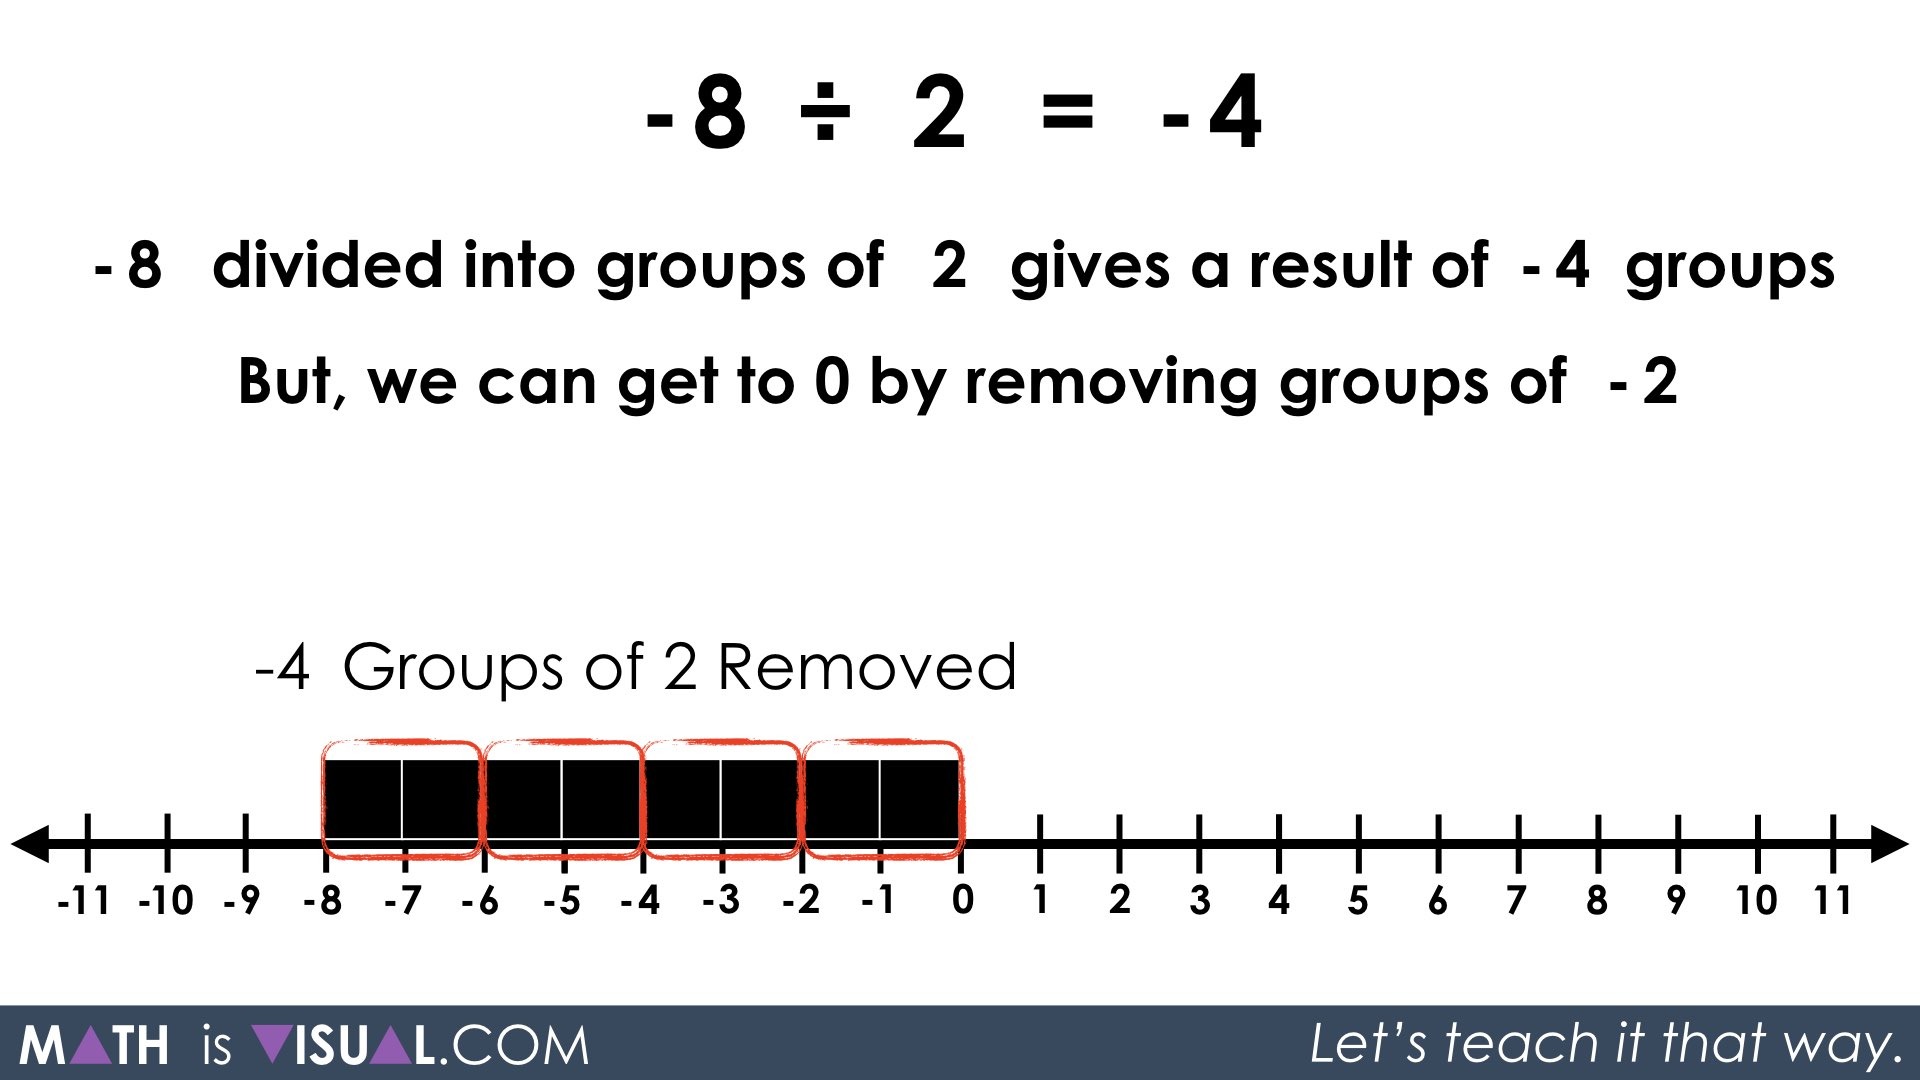 14-multiplication-of-negative-numbers-worksheet-worksheeto